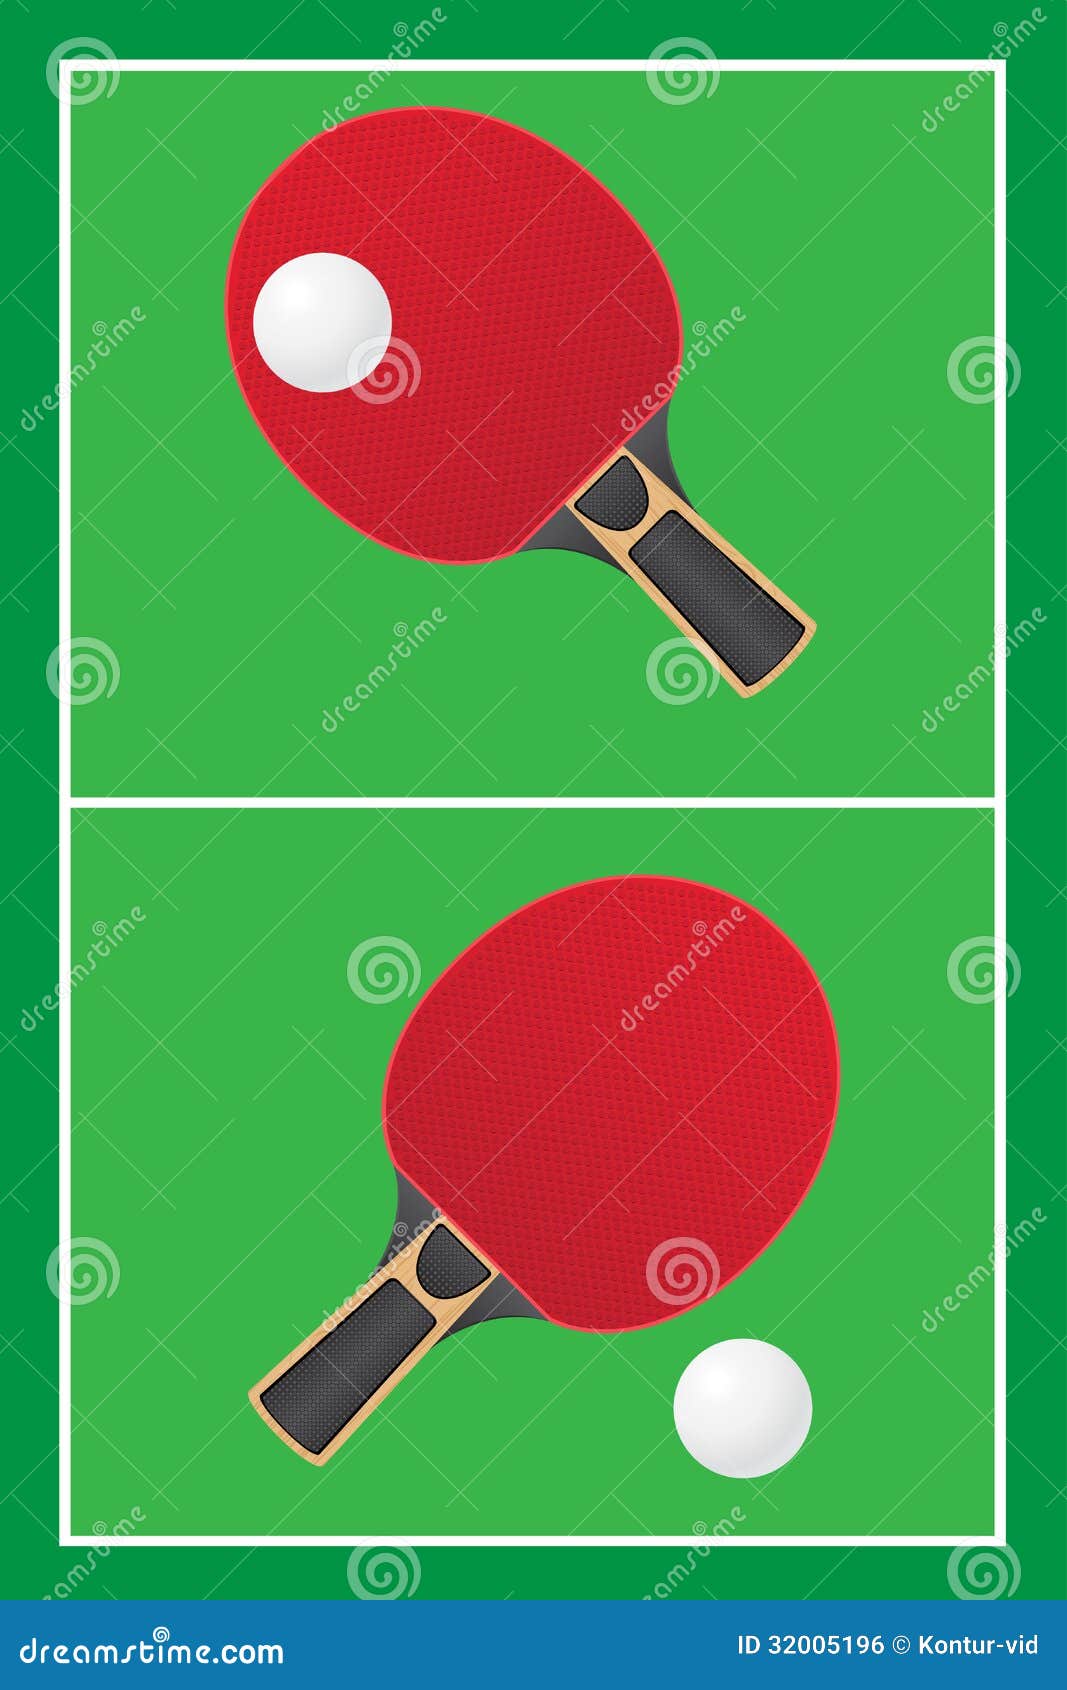 Red Para El Ejemplo Del Vector Del Ping-pong De Los Tenis De Mesa